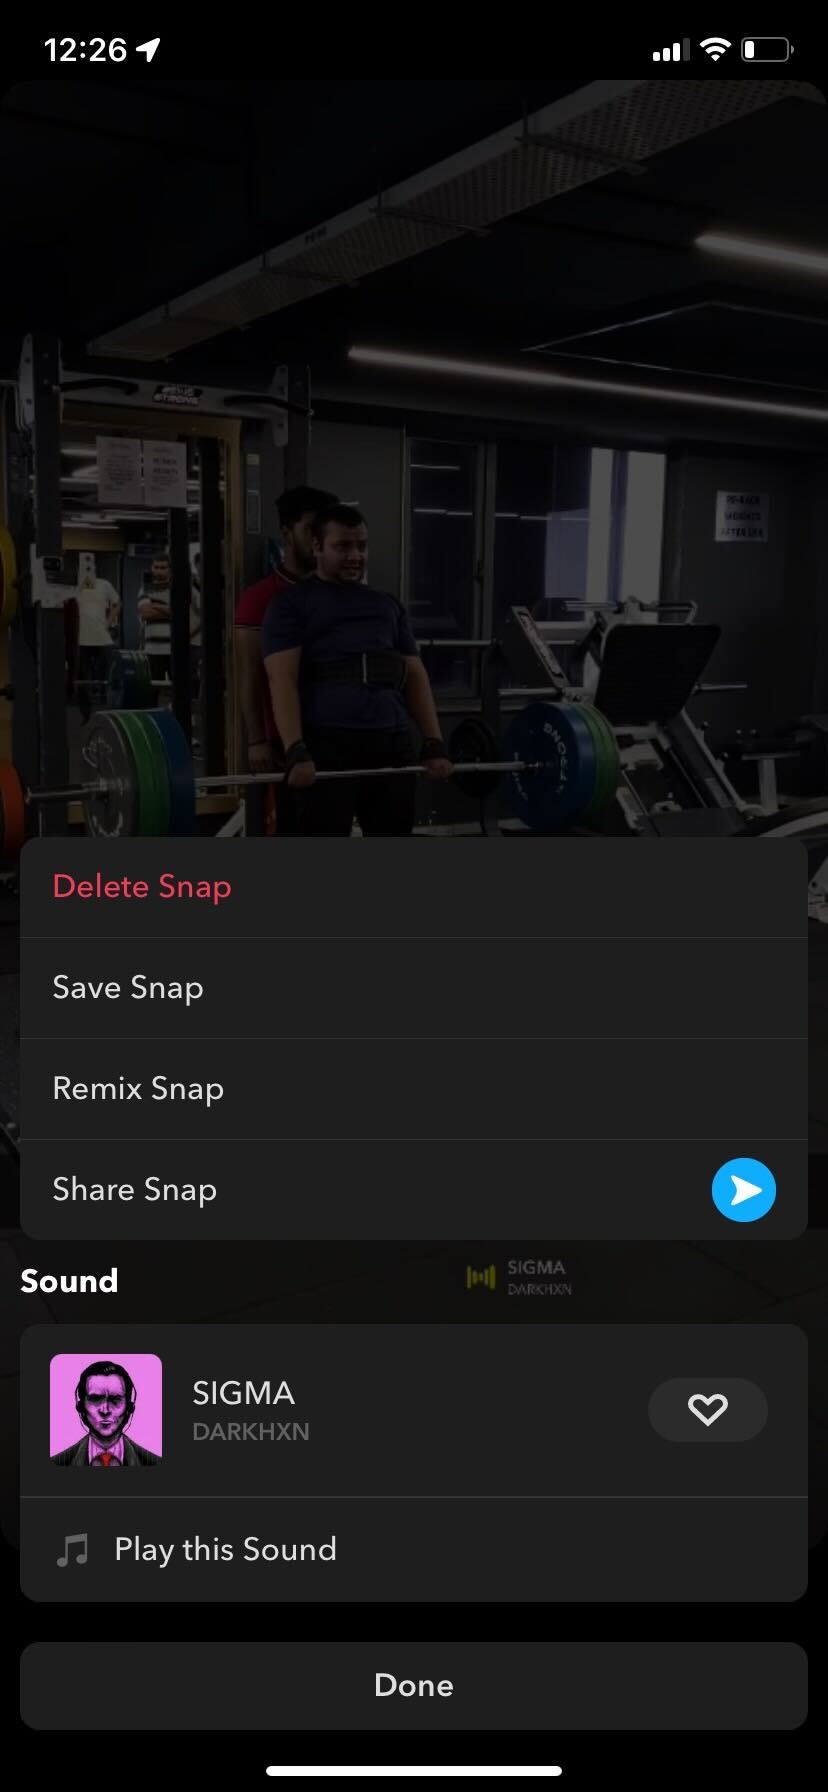 Snapchat Save Snap option